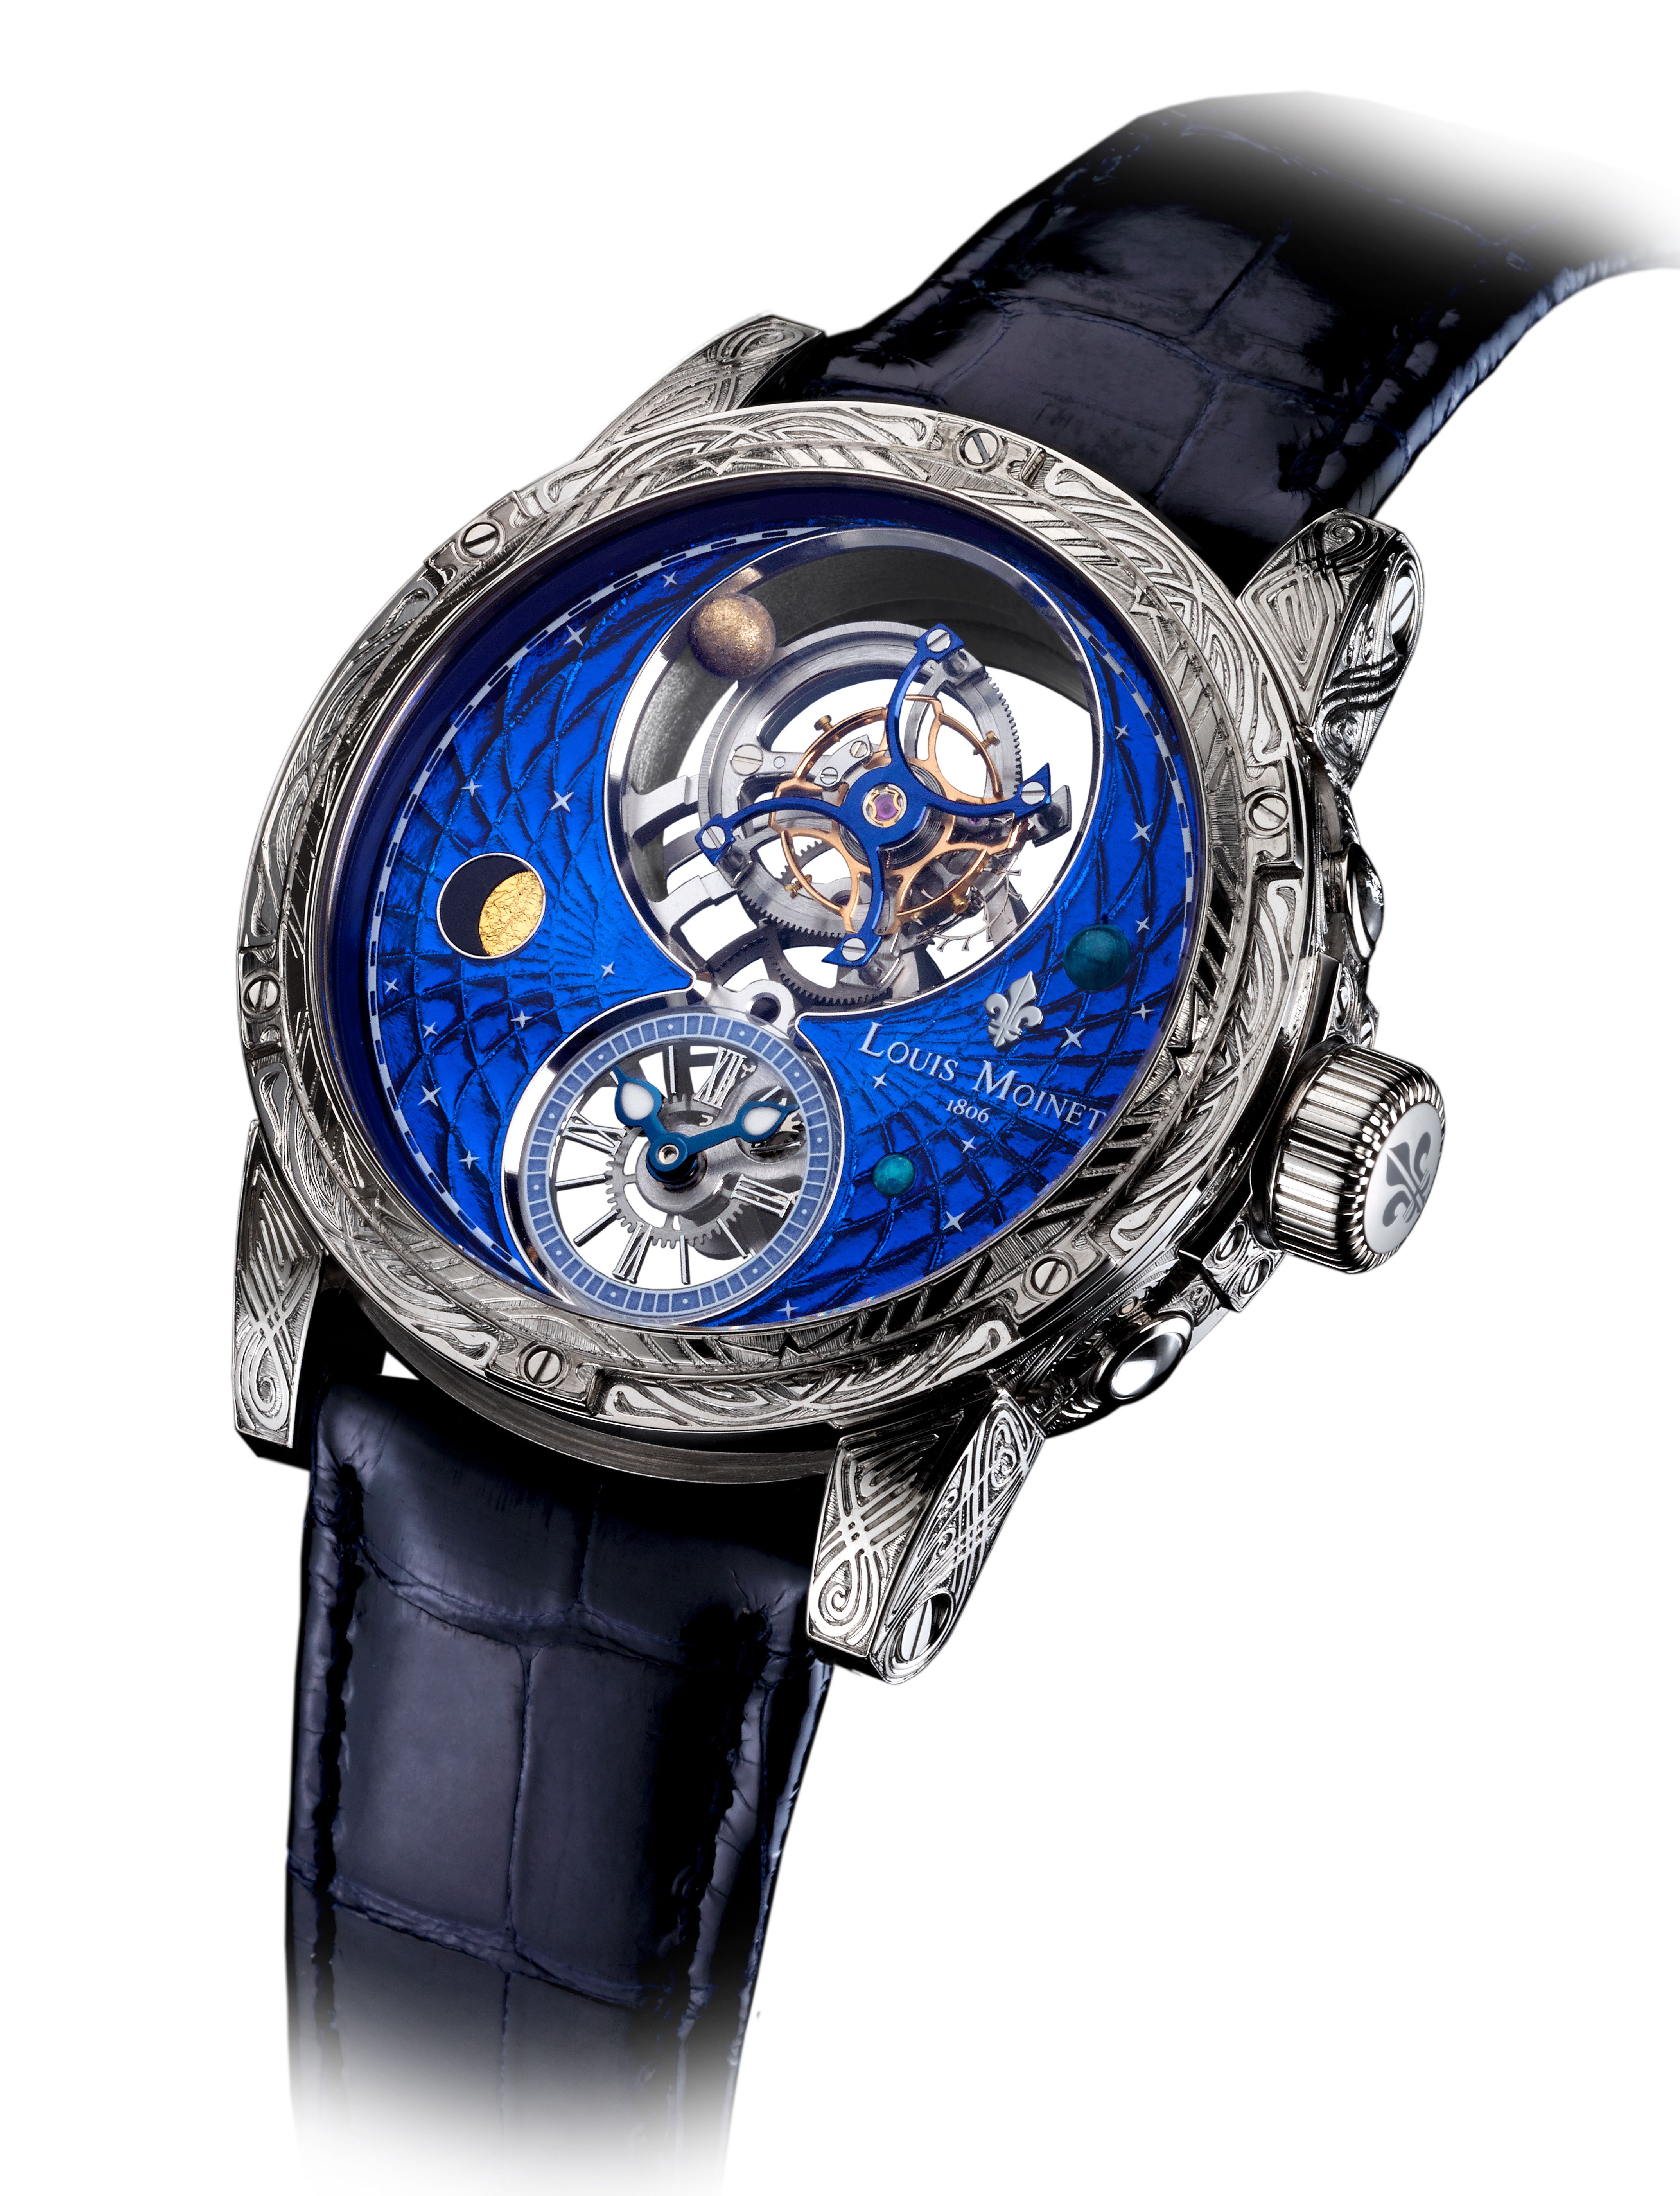 世界で最も美しい、かつ複雑な腕時計15選「羨望と畏怖の念を与える」